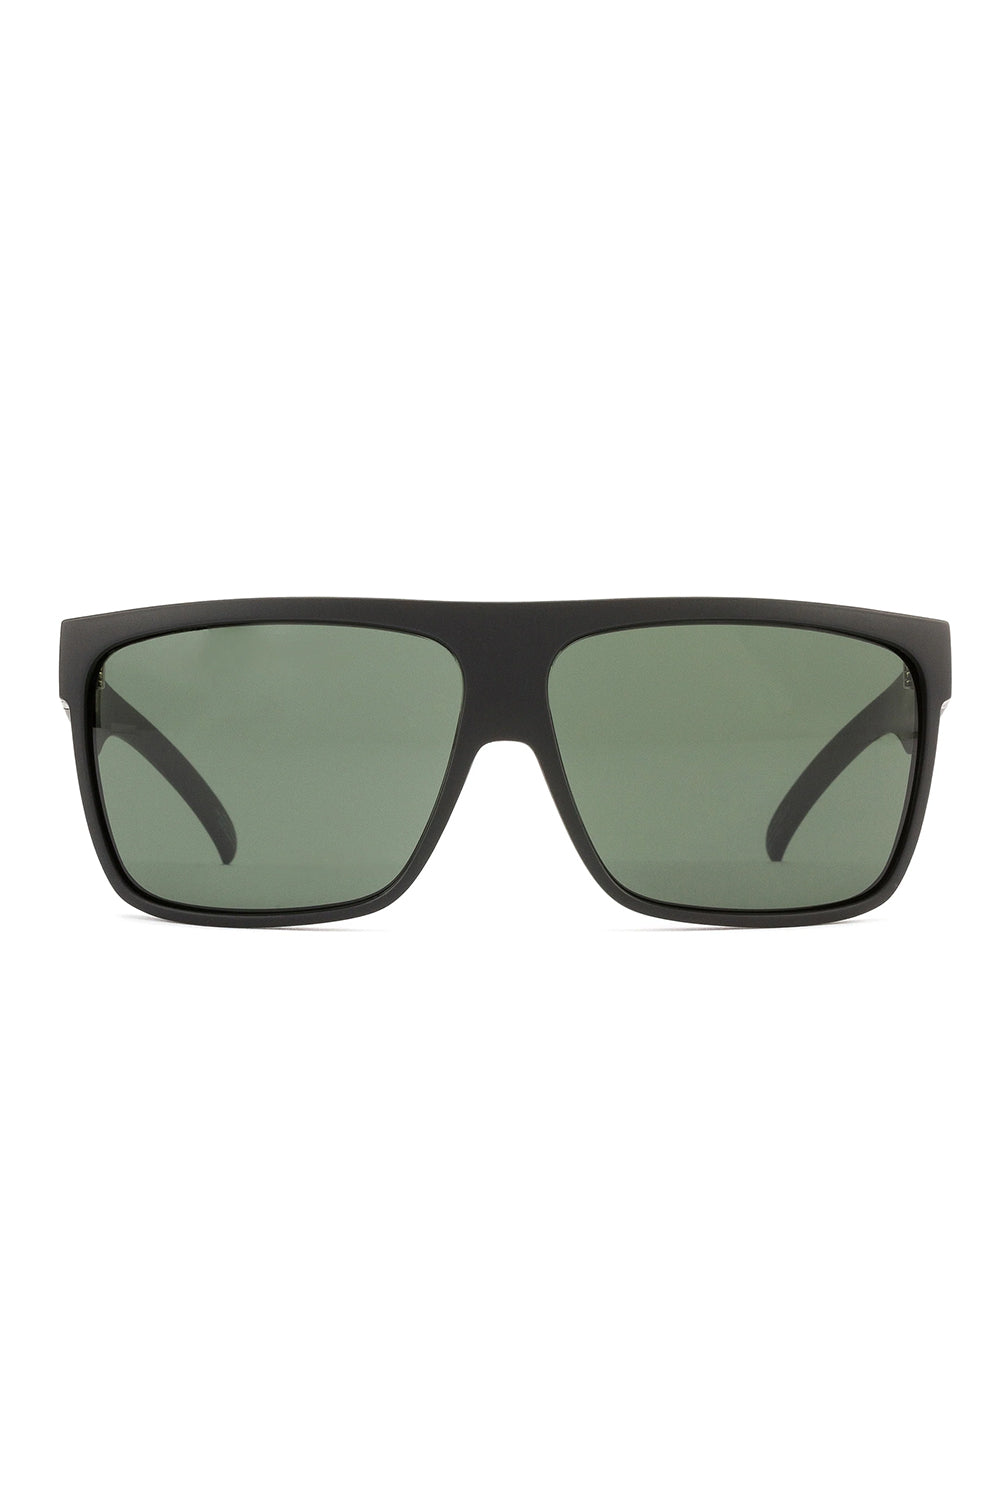 OTIS Eyewear | OTIS Young Blood Sunglasses - Matte Black/Grey